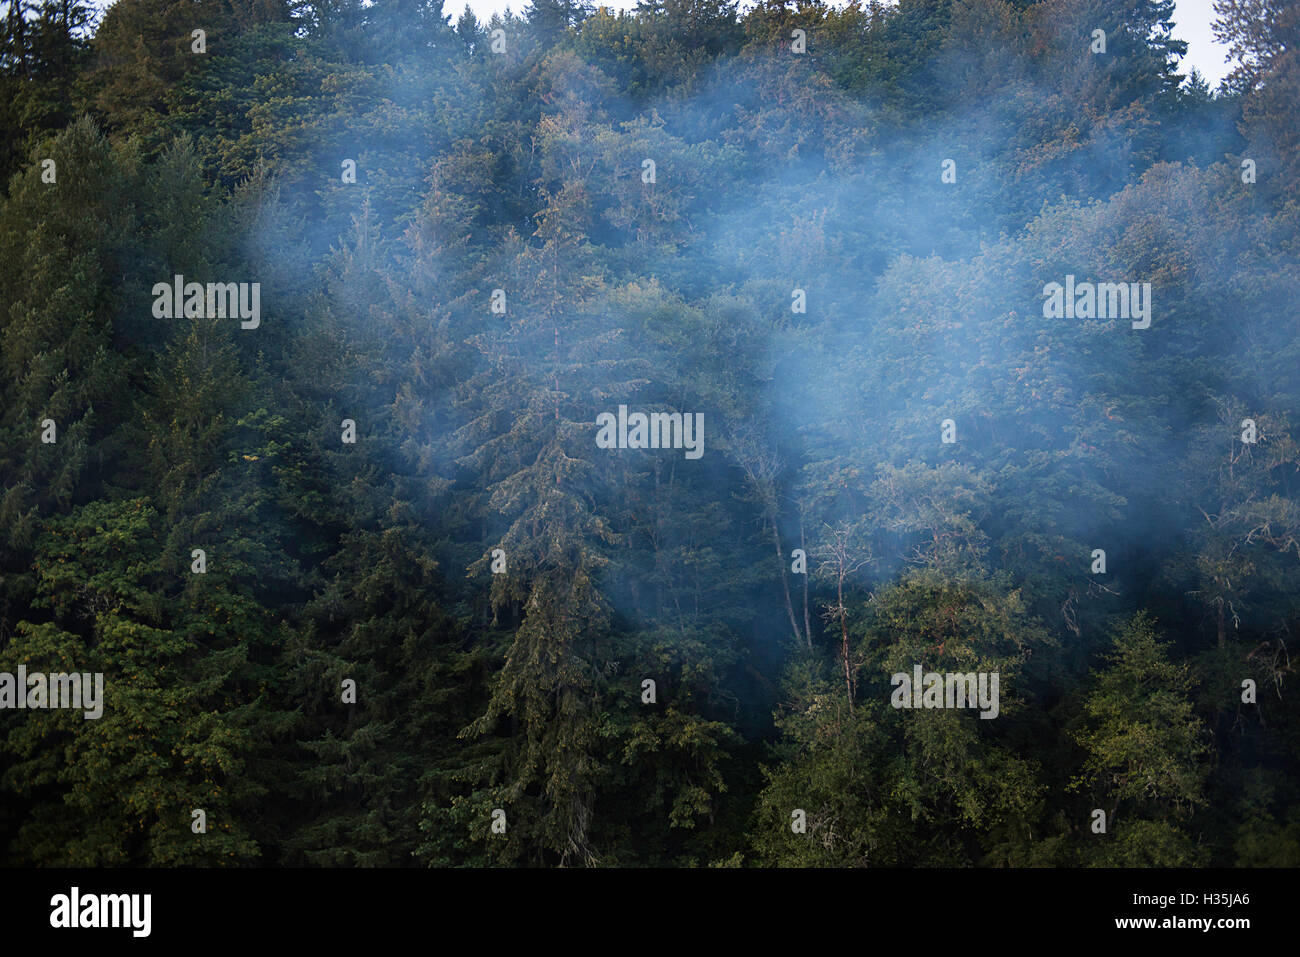 La fumée de feu de camp dans une forêt. Banque D'Images